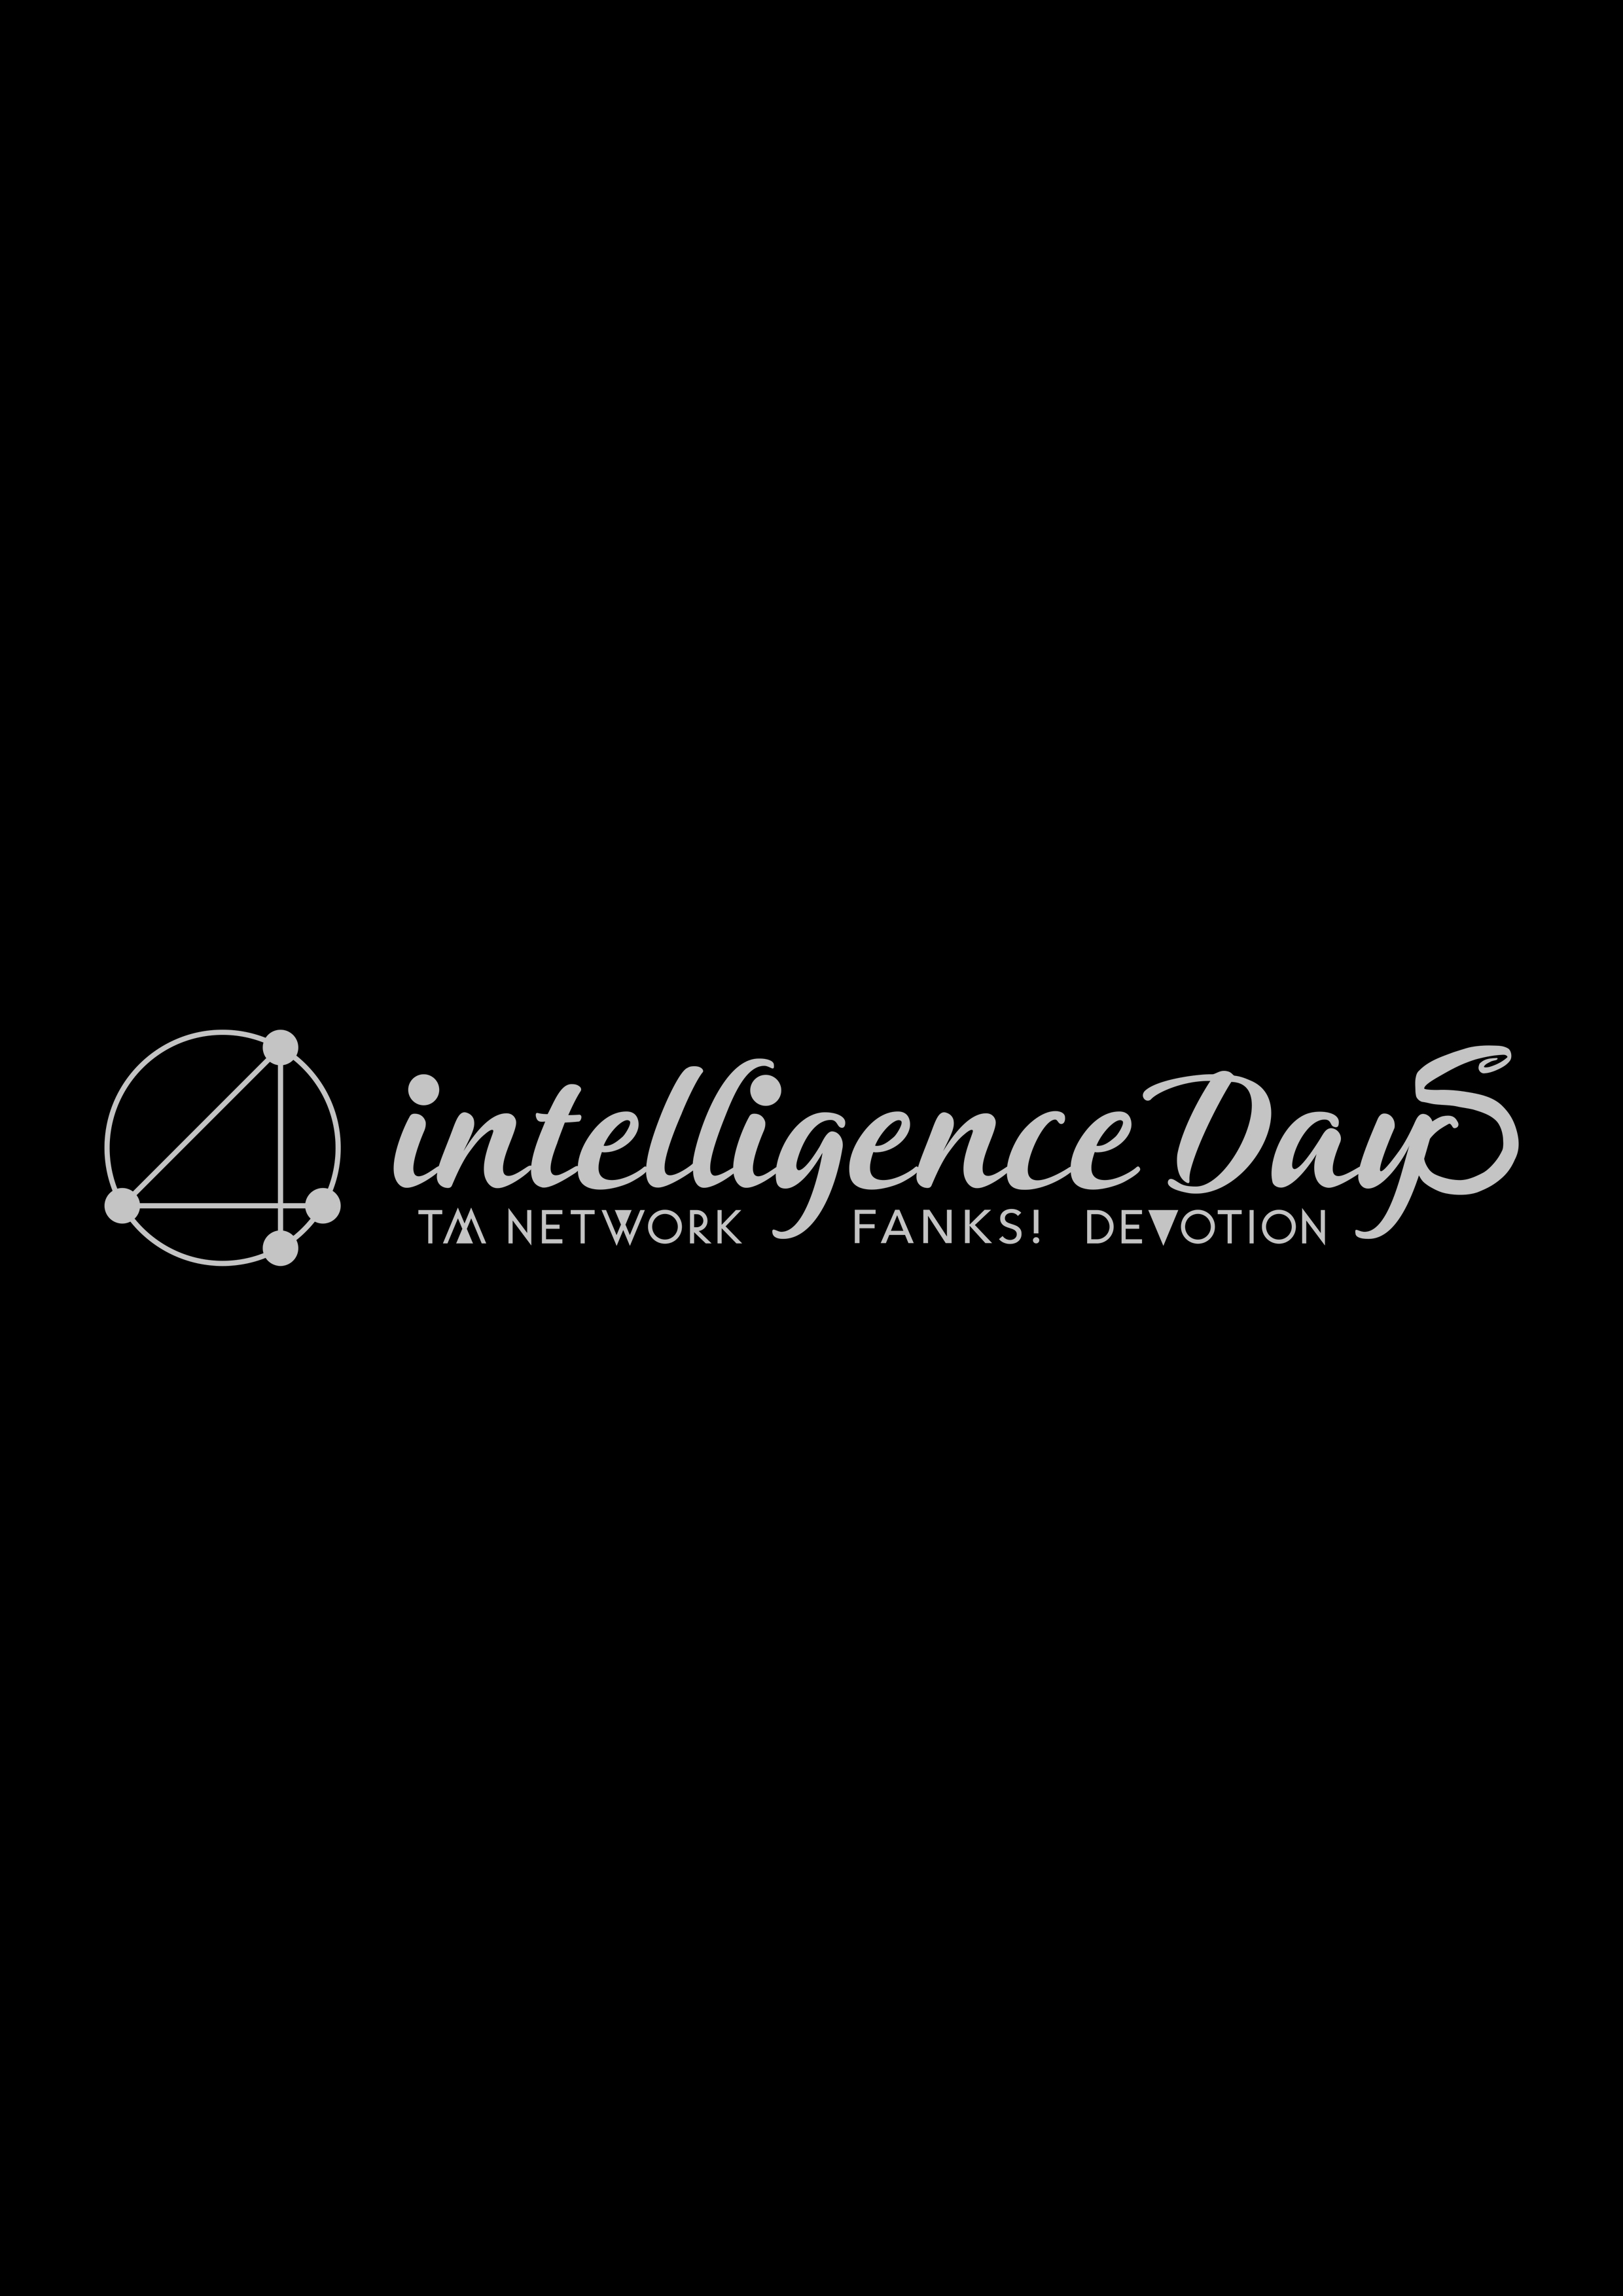 TM NETWORK 40th FANKS intelligence Days 〜DEVOTION〜 AFTER PAMPHLET